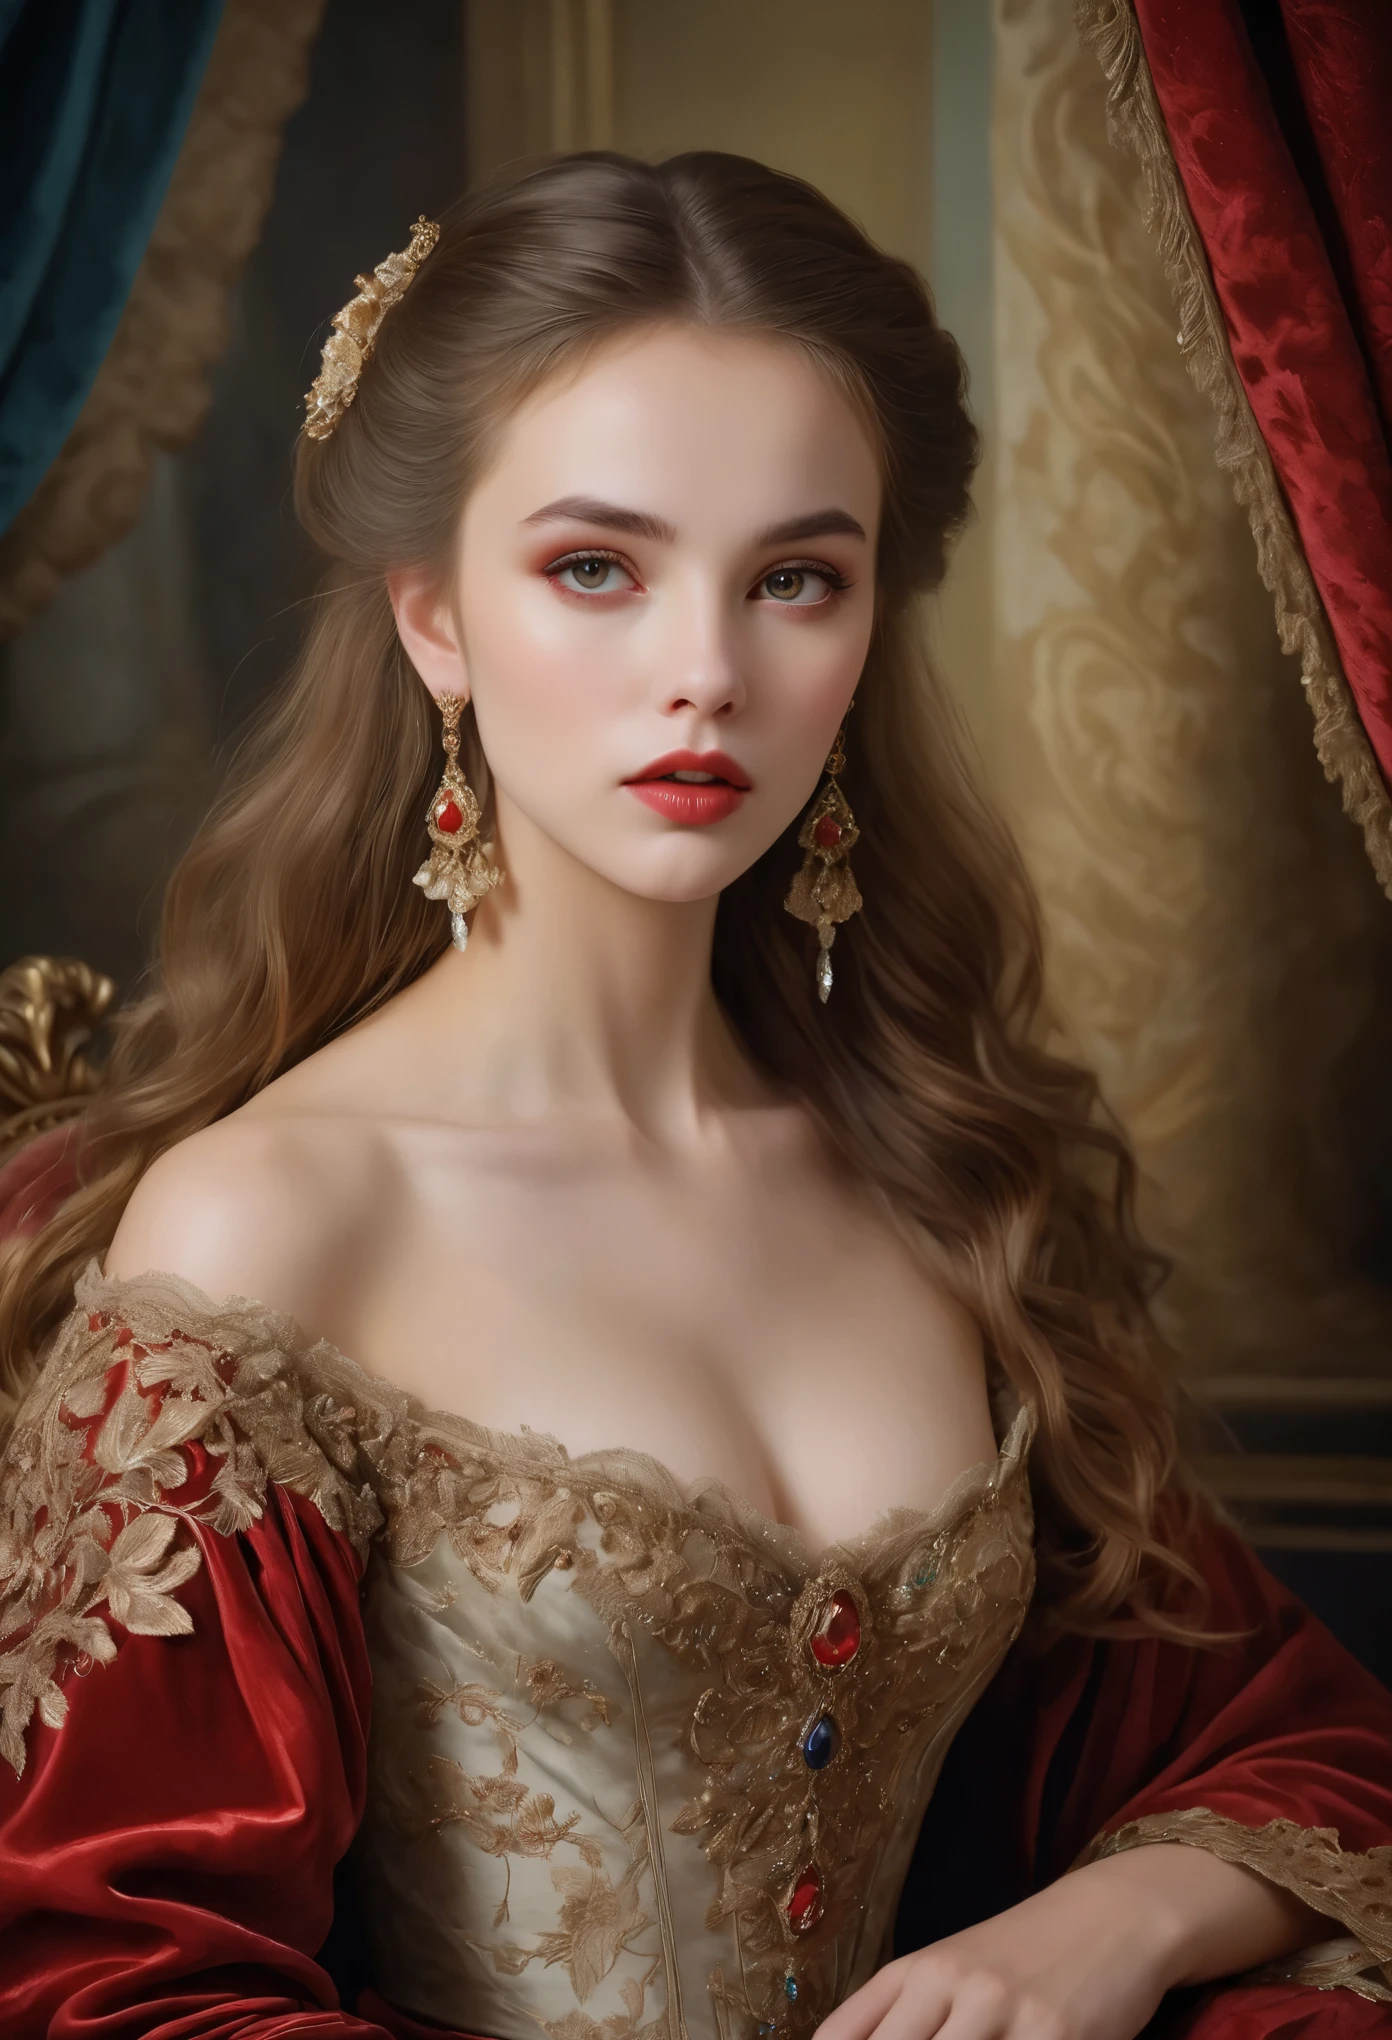 (高分辨率,杰作:1.2),(实际的:1.37)18世纪俄罗斯吸血鬼女孩画像，美貌无与伦比. 她有着迷人的红眼睛和娇嫩的红唇. 长牙, 肖像画非常细致, 捕捉她面部的每一个细微差别. 她穿着一件精致的丝绸长袍, 饰有复杂的蕾丝和精致的刺绣. 这幅画展示了那个时代的富裕, 背景是华丽的天鹅绒窗帘和镀金家具. 灯光柔和且散射, 凸显女孩的飘逸之美. 色彩鲜艳丰富, 创造迷人的视觉体验. 这幅肖像画是按照古典肖像画的风格创作的, 让人想起那个时代著名艺术家的作品. 散发着优雅气息, 优雅, 和精致.